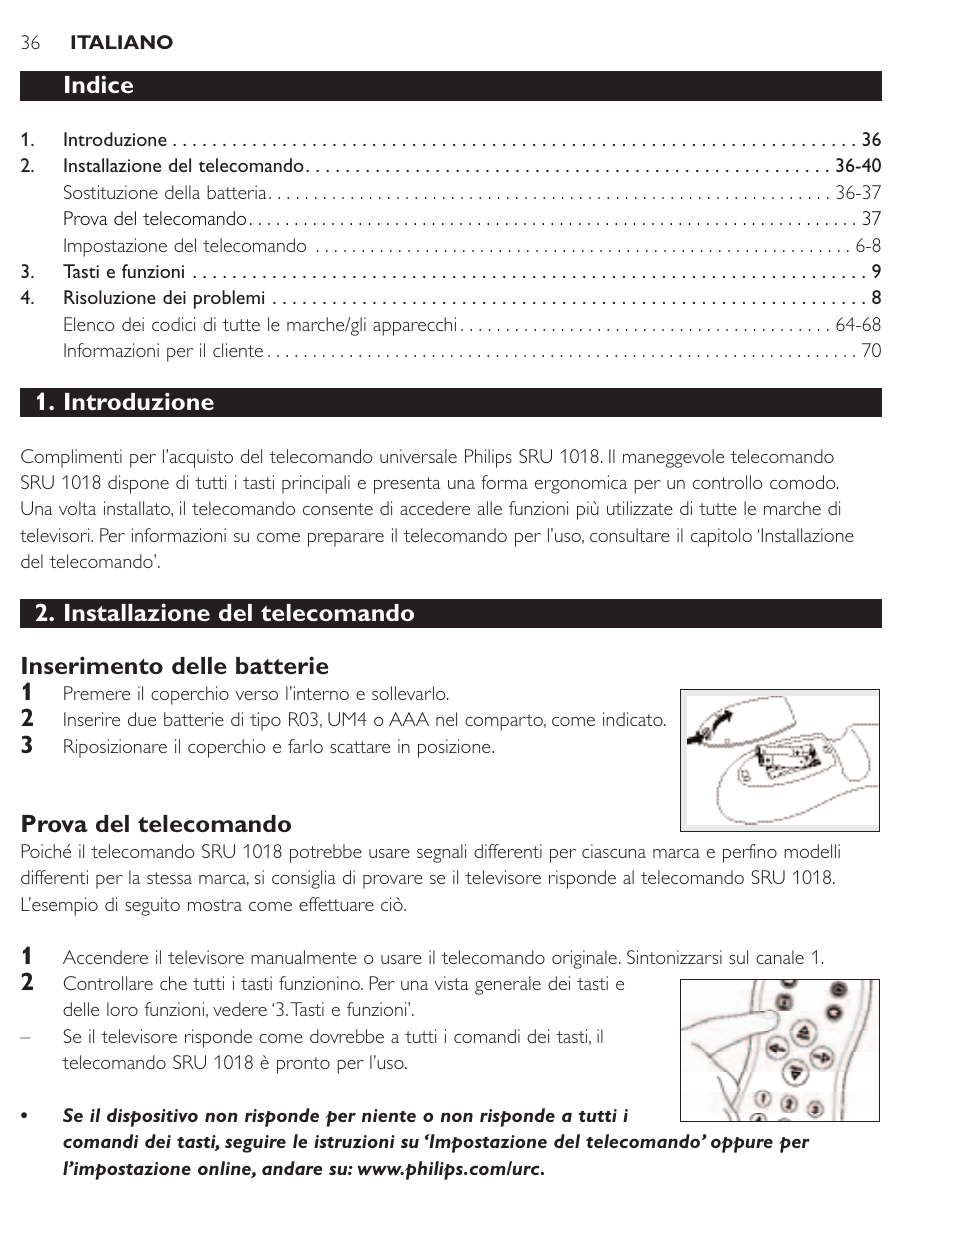 Indice, Introduzione, Prova del telecomando | Philips SRU1018 User Manual |  Page 36 / 72